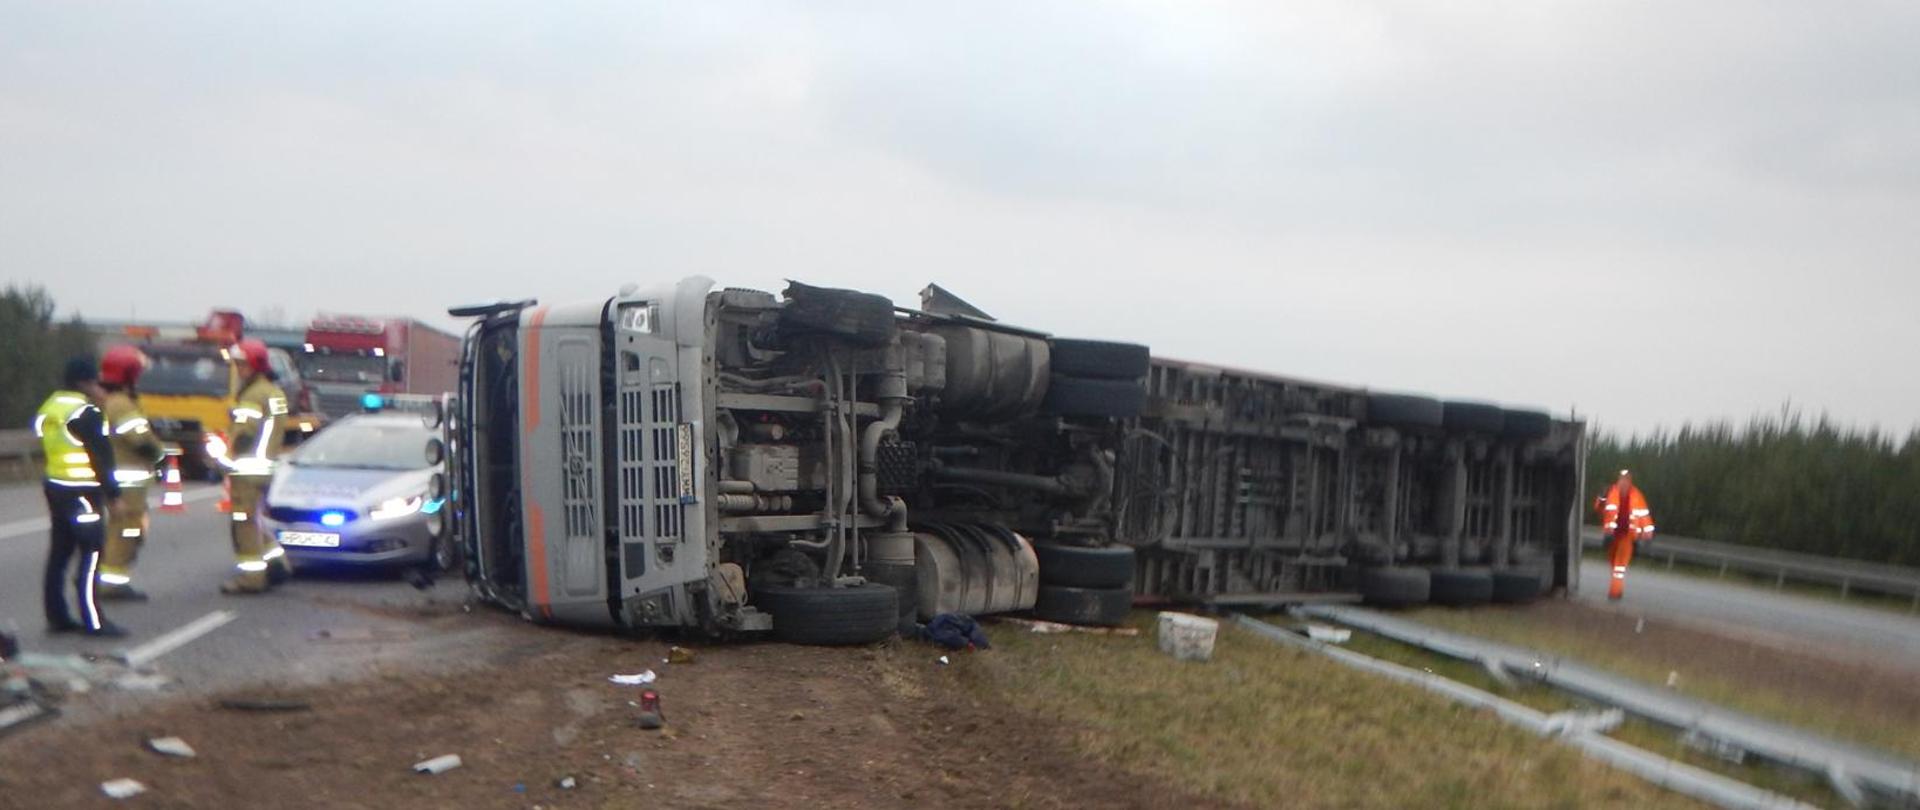 Zdjęcie przedstawia samochód ciężarowy po wypadku.